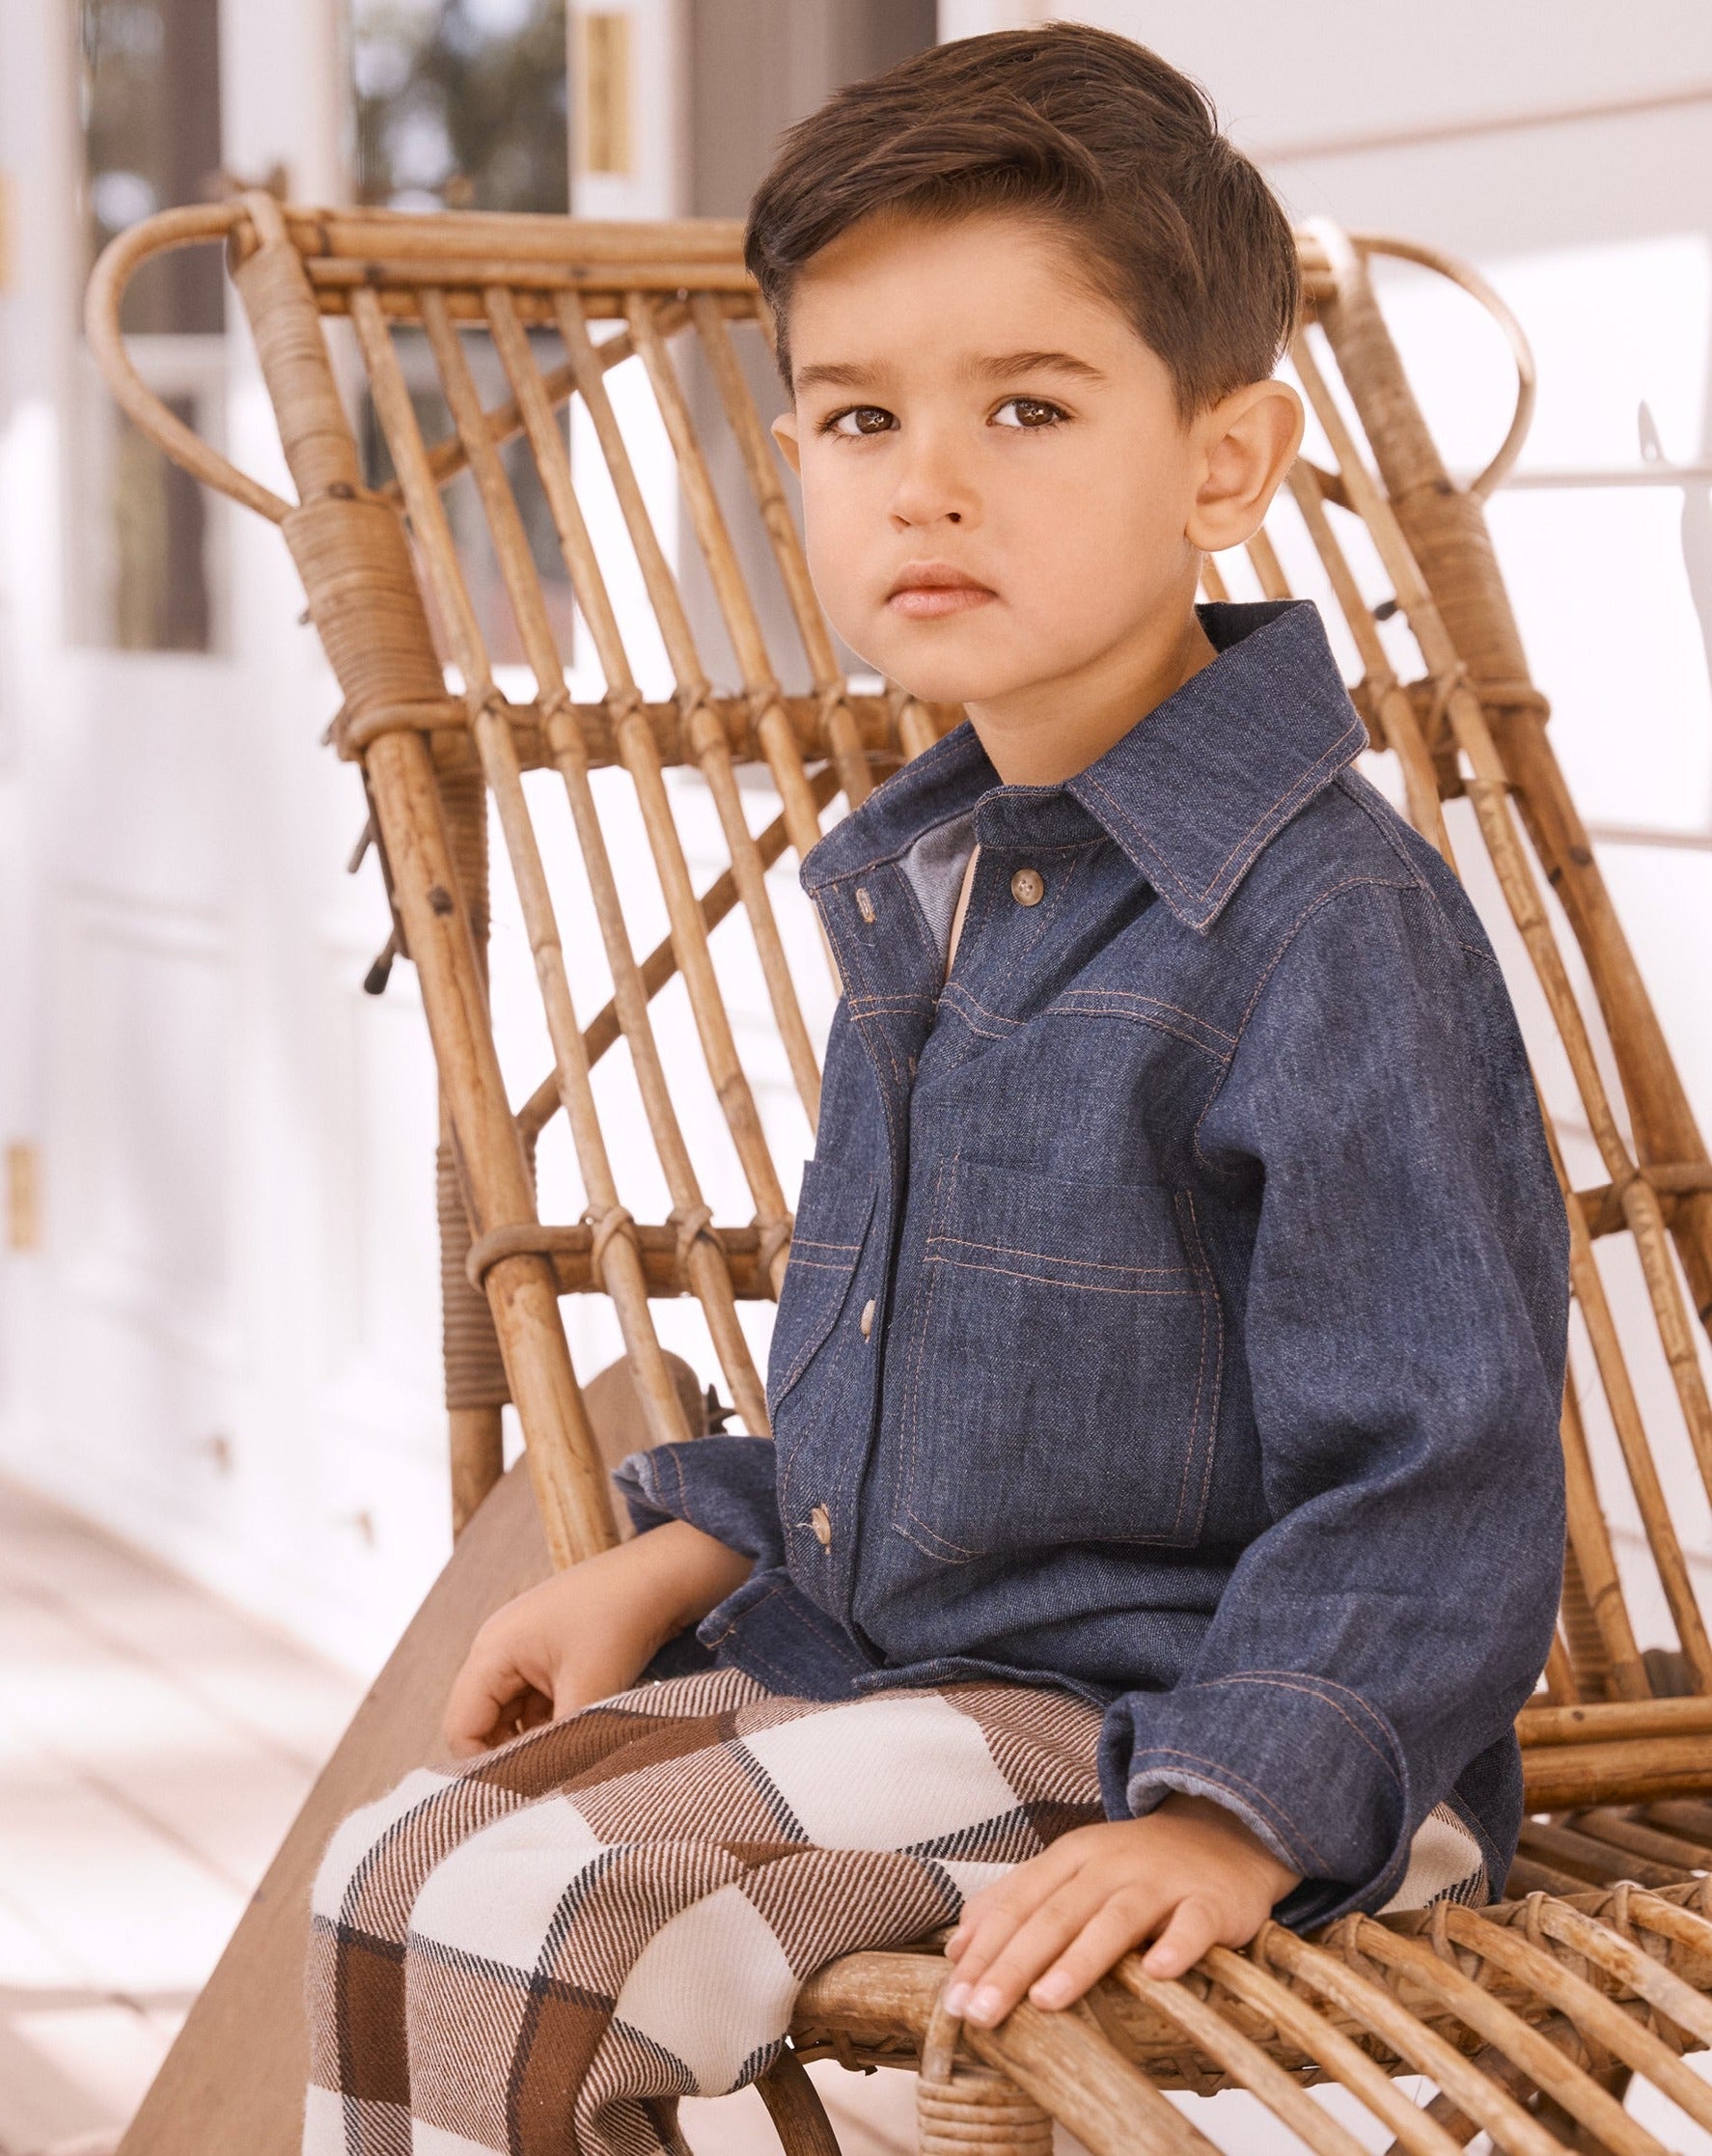 Boys' Designer Shirt, Denim, ages 1 to 6.